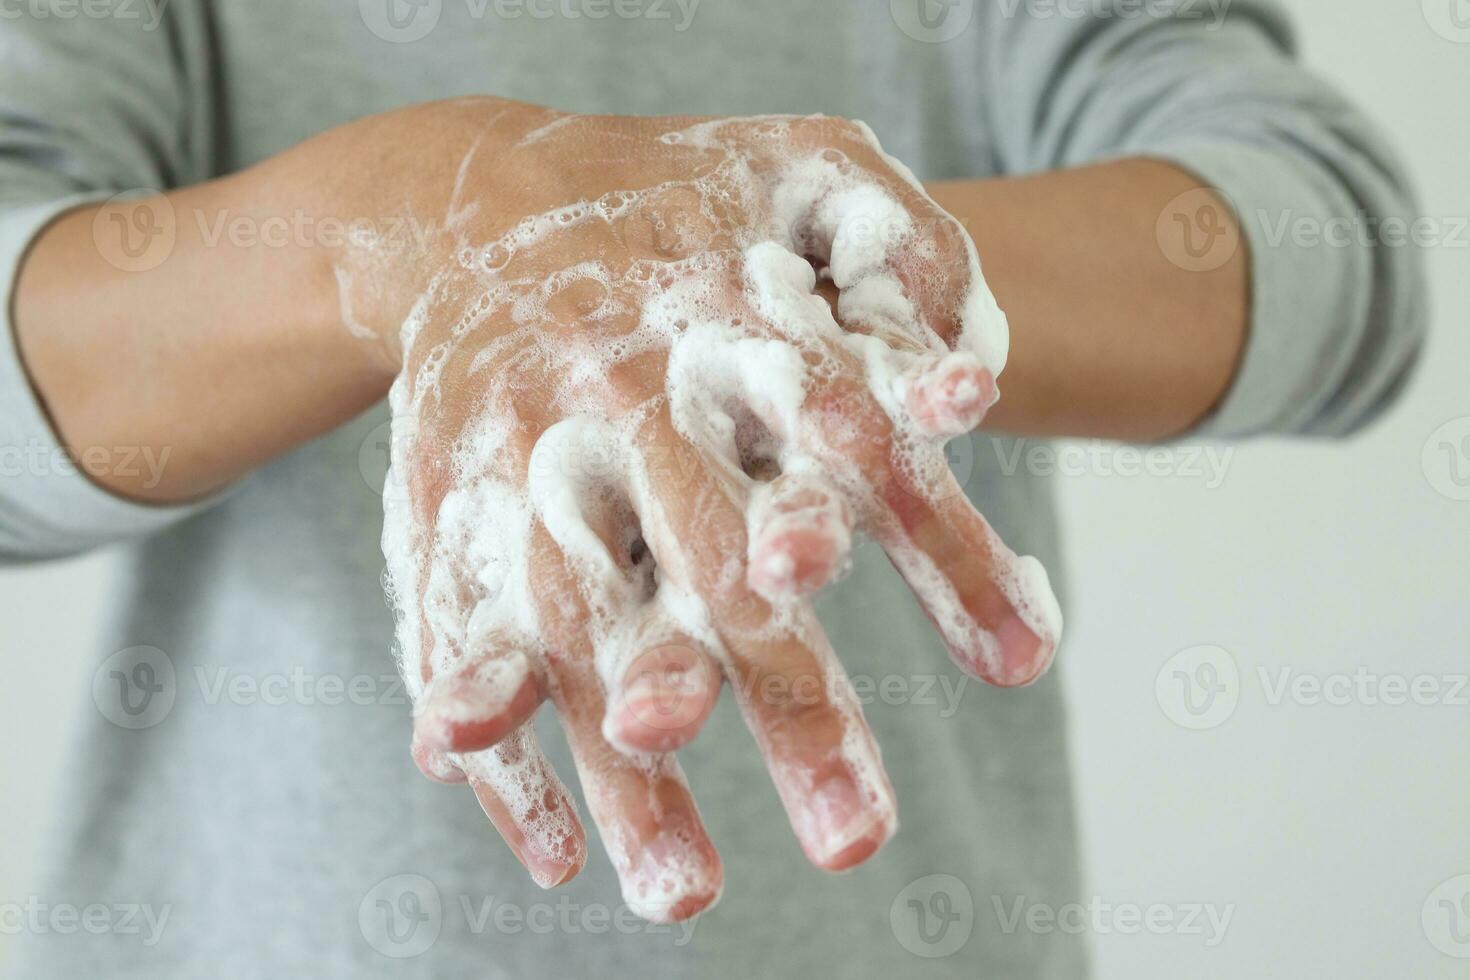 Mens wassen handen met zeep voor covid-19 corona virus het voorkomen concept foto